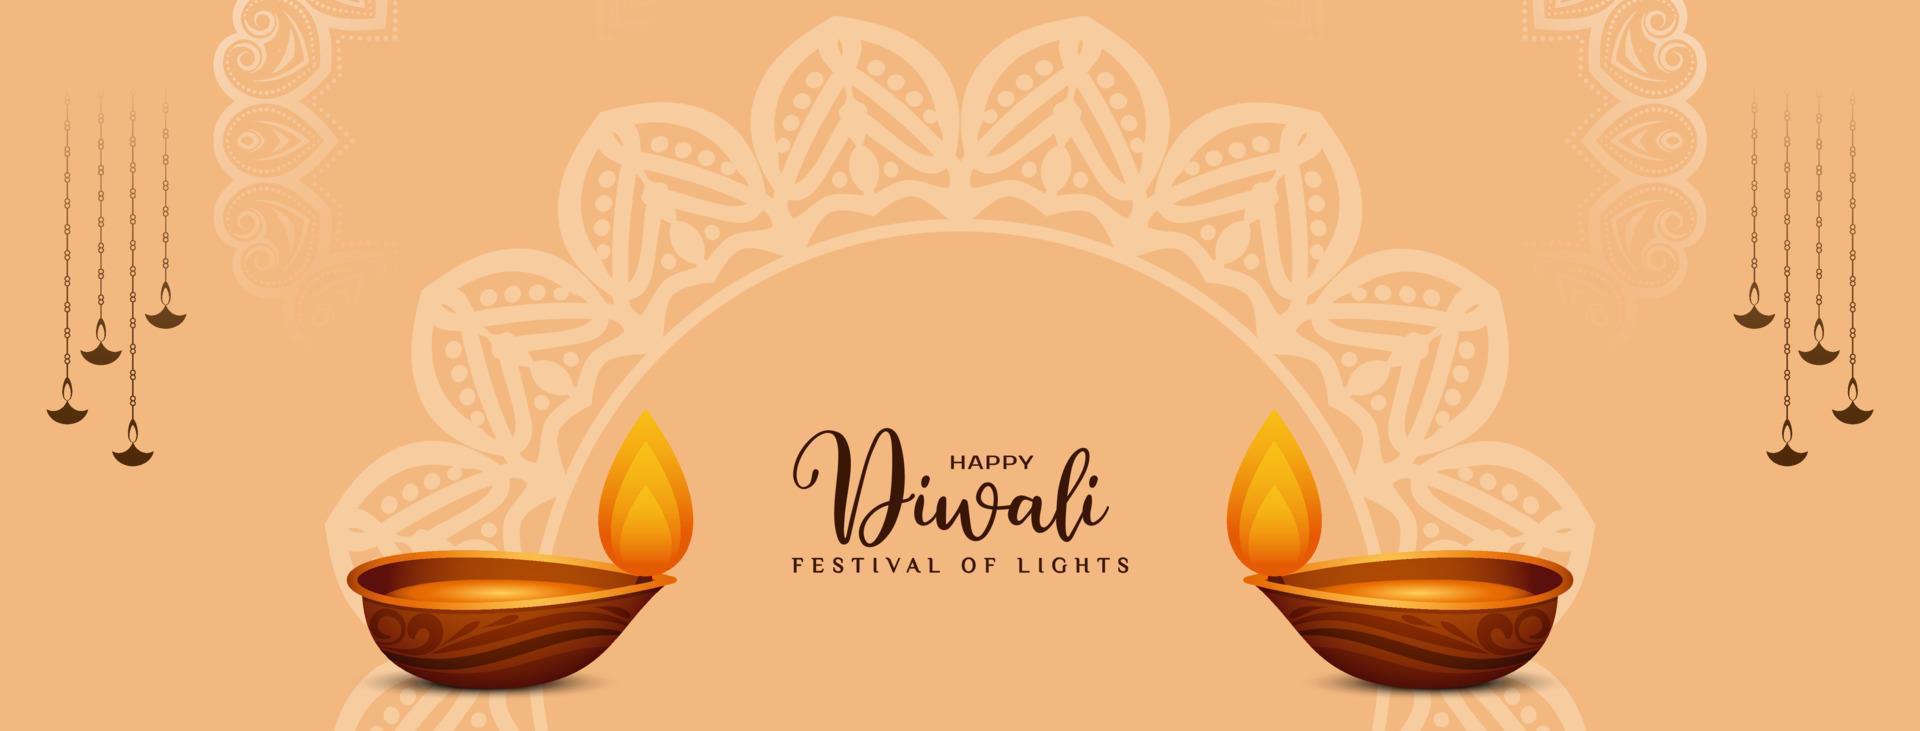 banner del festival cultural tradicional hindú feliz diwali con diya vector